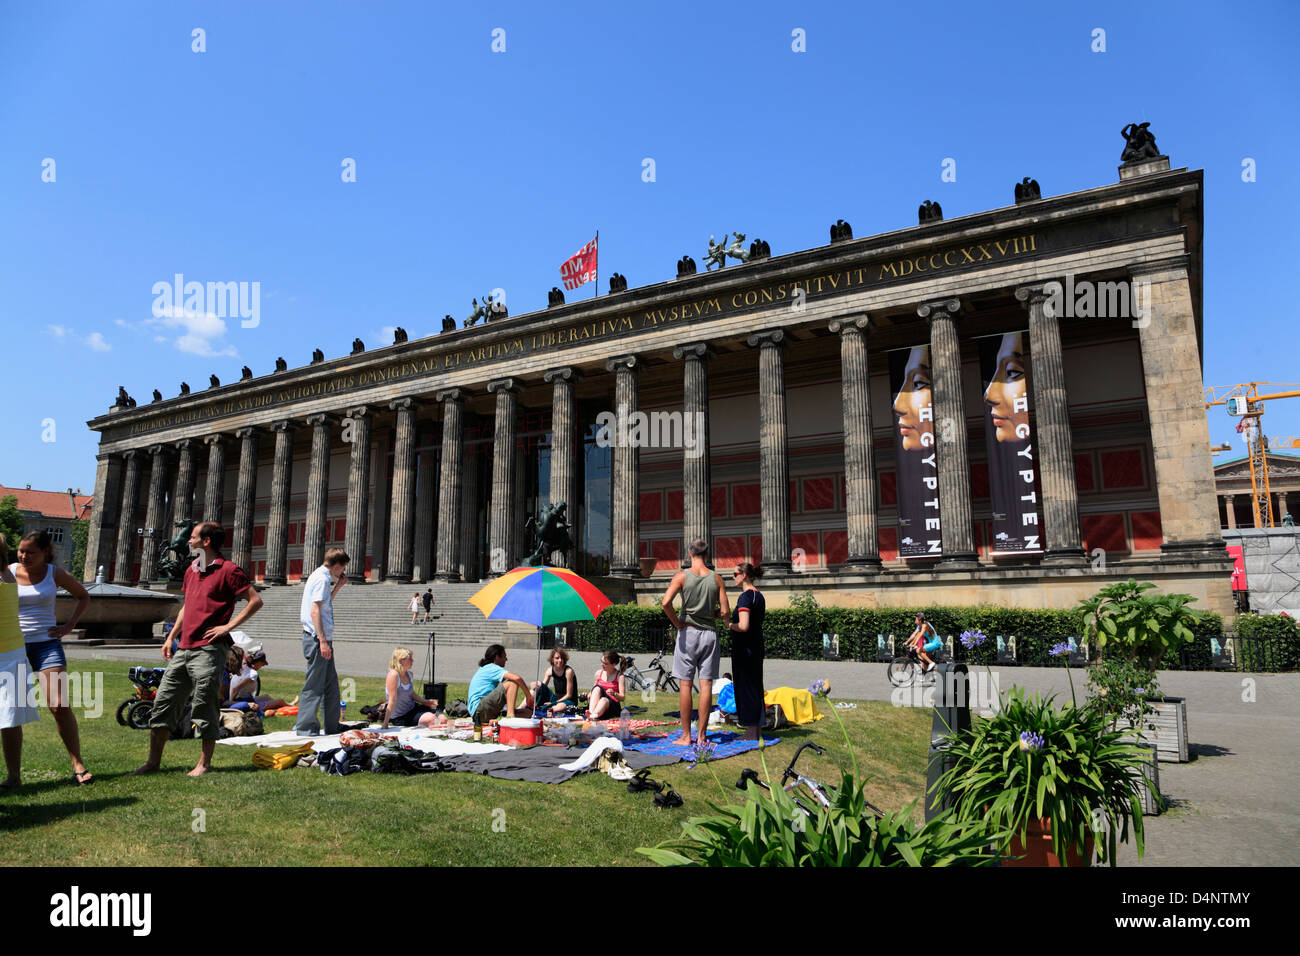 ALTES MUSEUM, sunbath in Lustgarden, Berlin Mitte, Germany Stock Photo